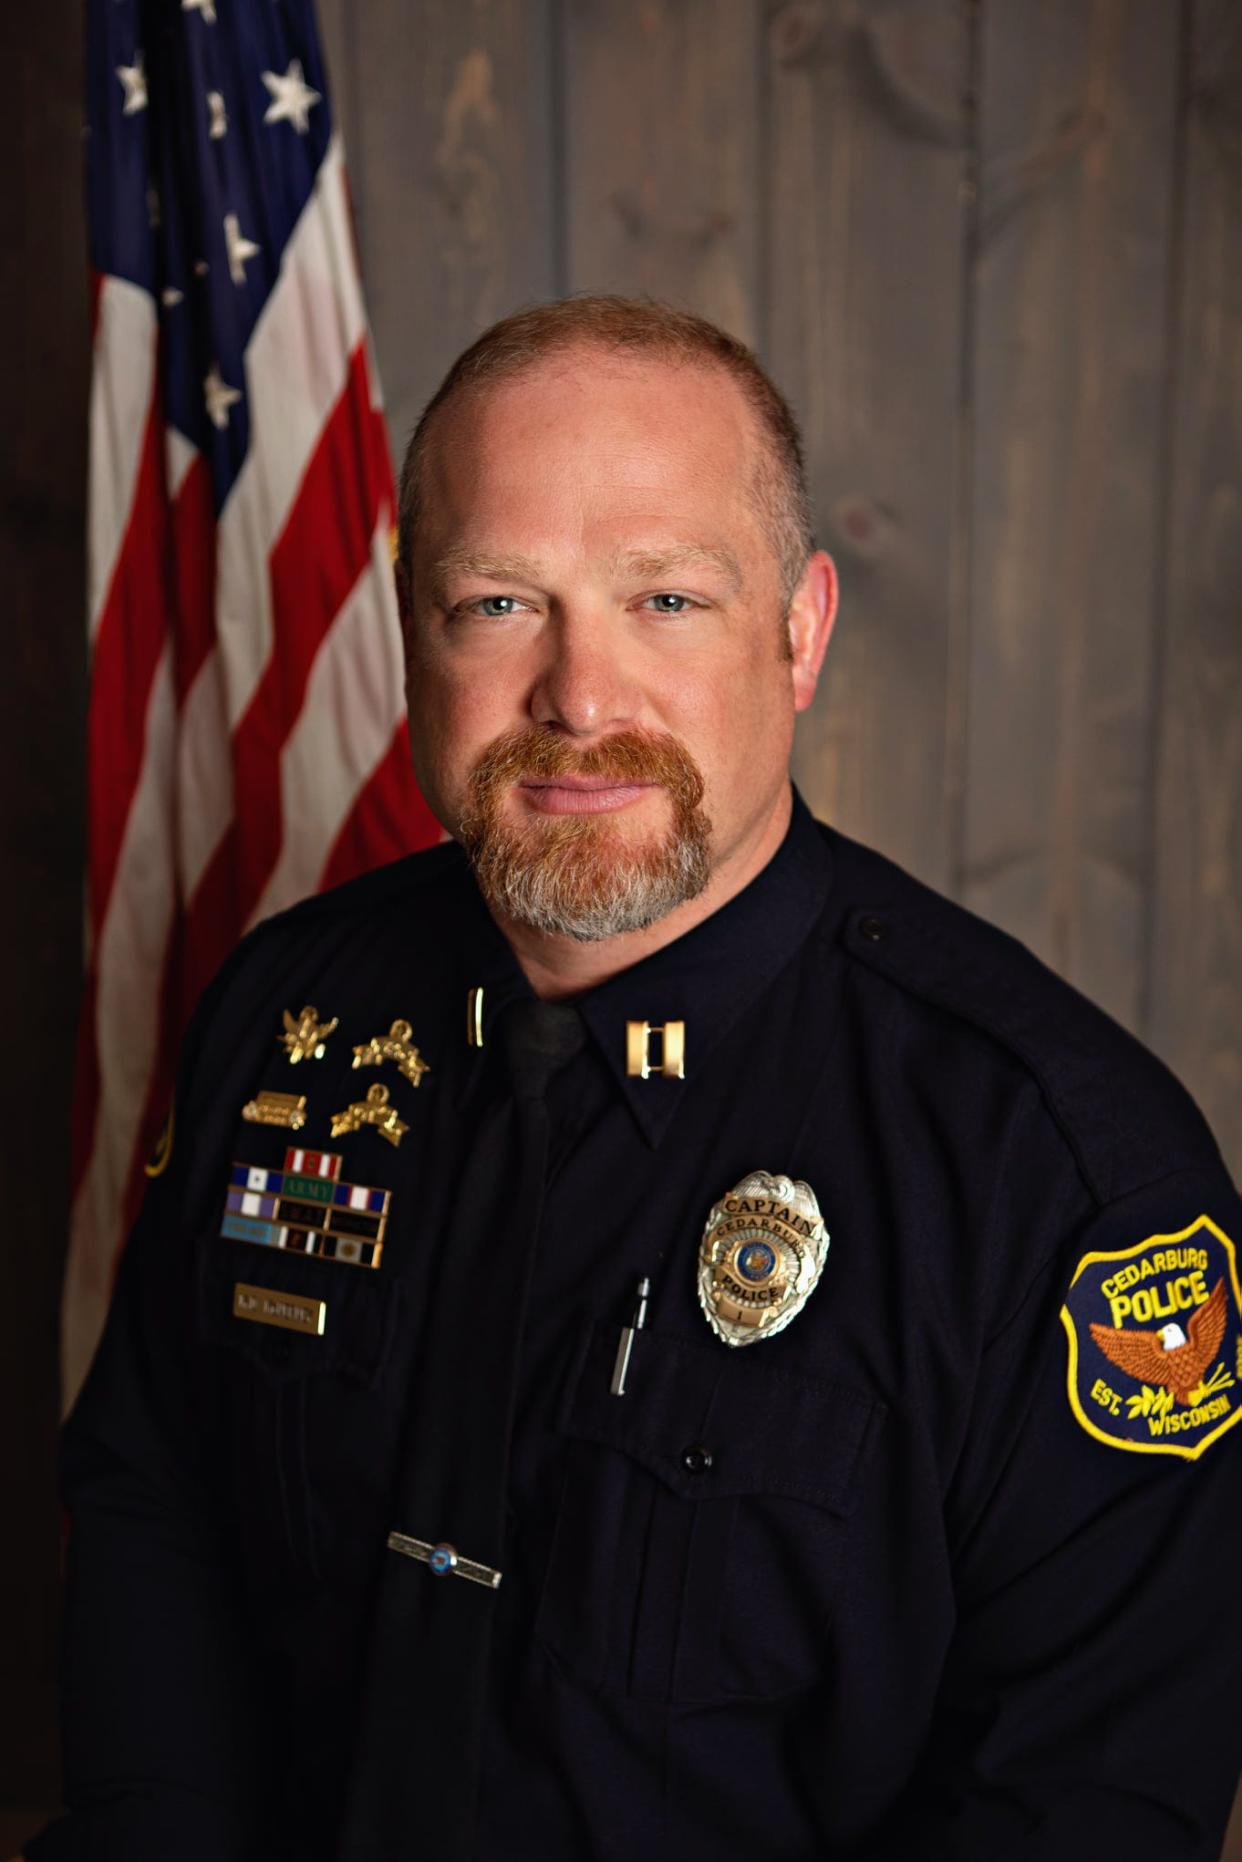 Cedarburg Police Chief Michael McNerney